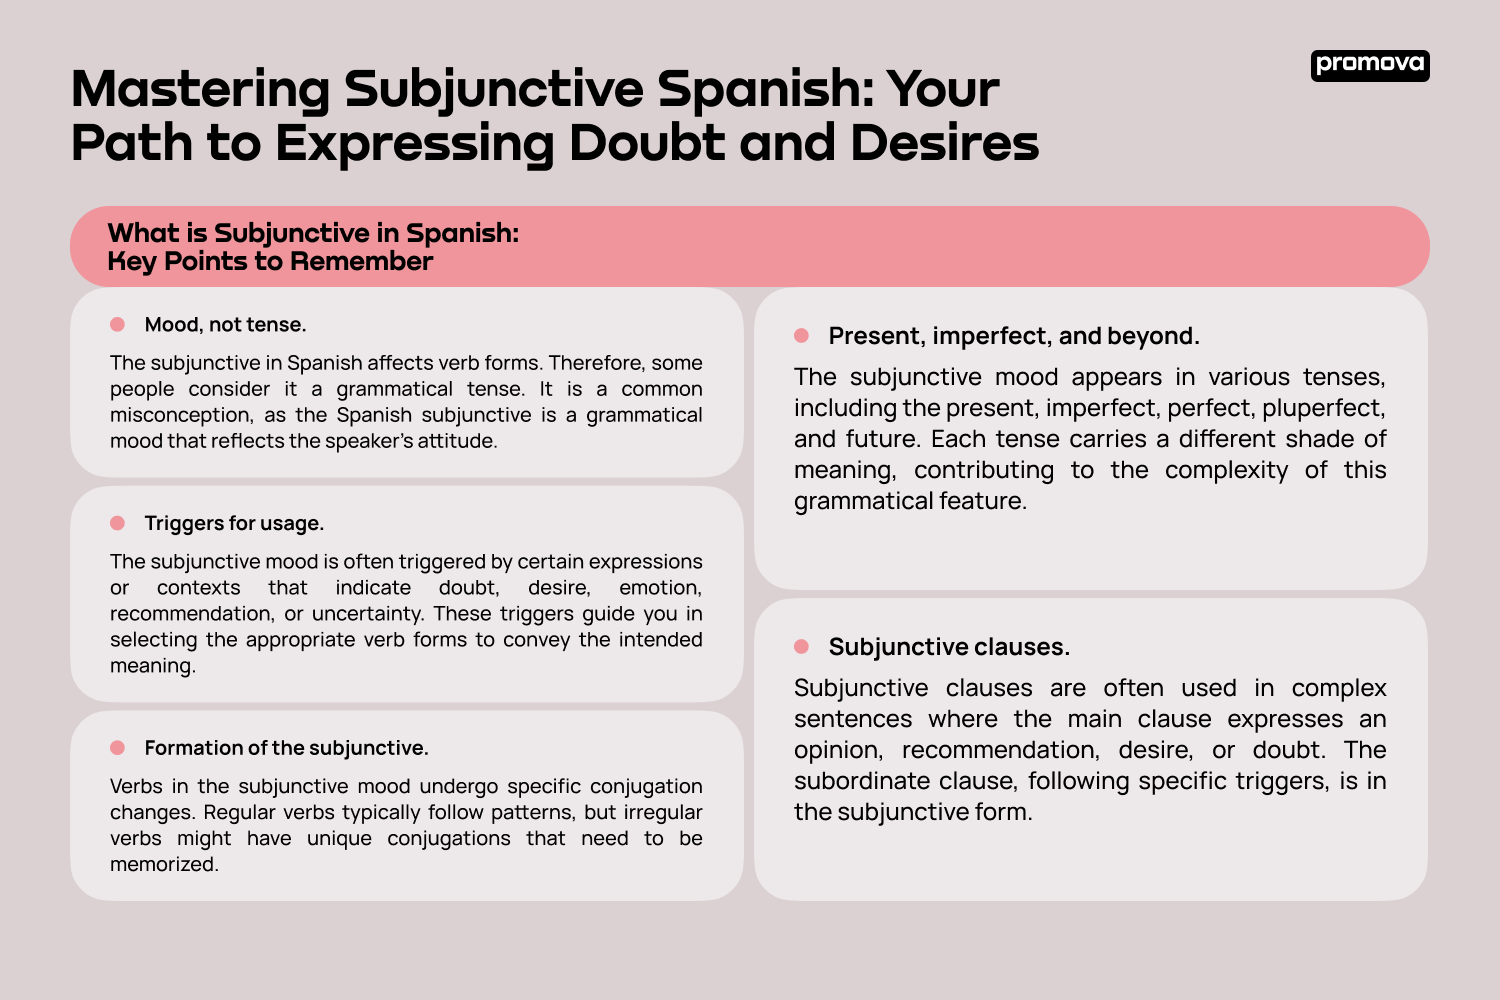 Understanding the Subjunctive in Spanish